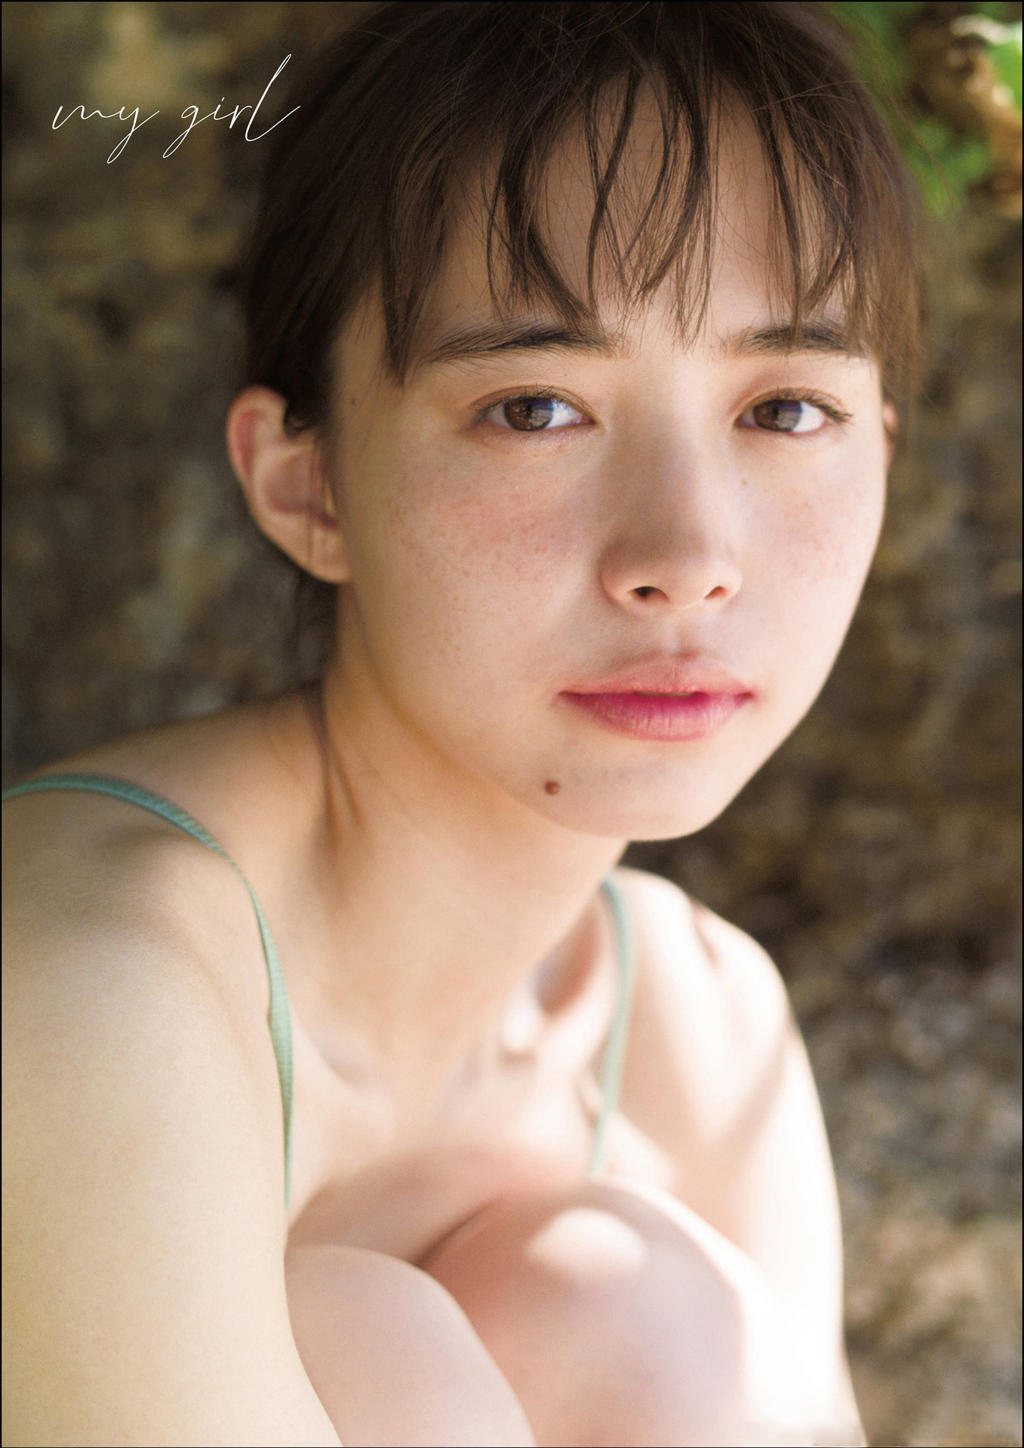 井桁弘惠.[Photobook] Hiroe Igeta 井桁弘恵 1st Photobook - my girl 2020-12-19